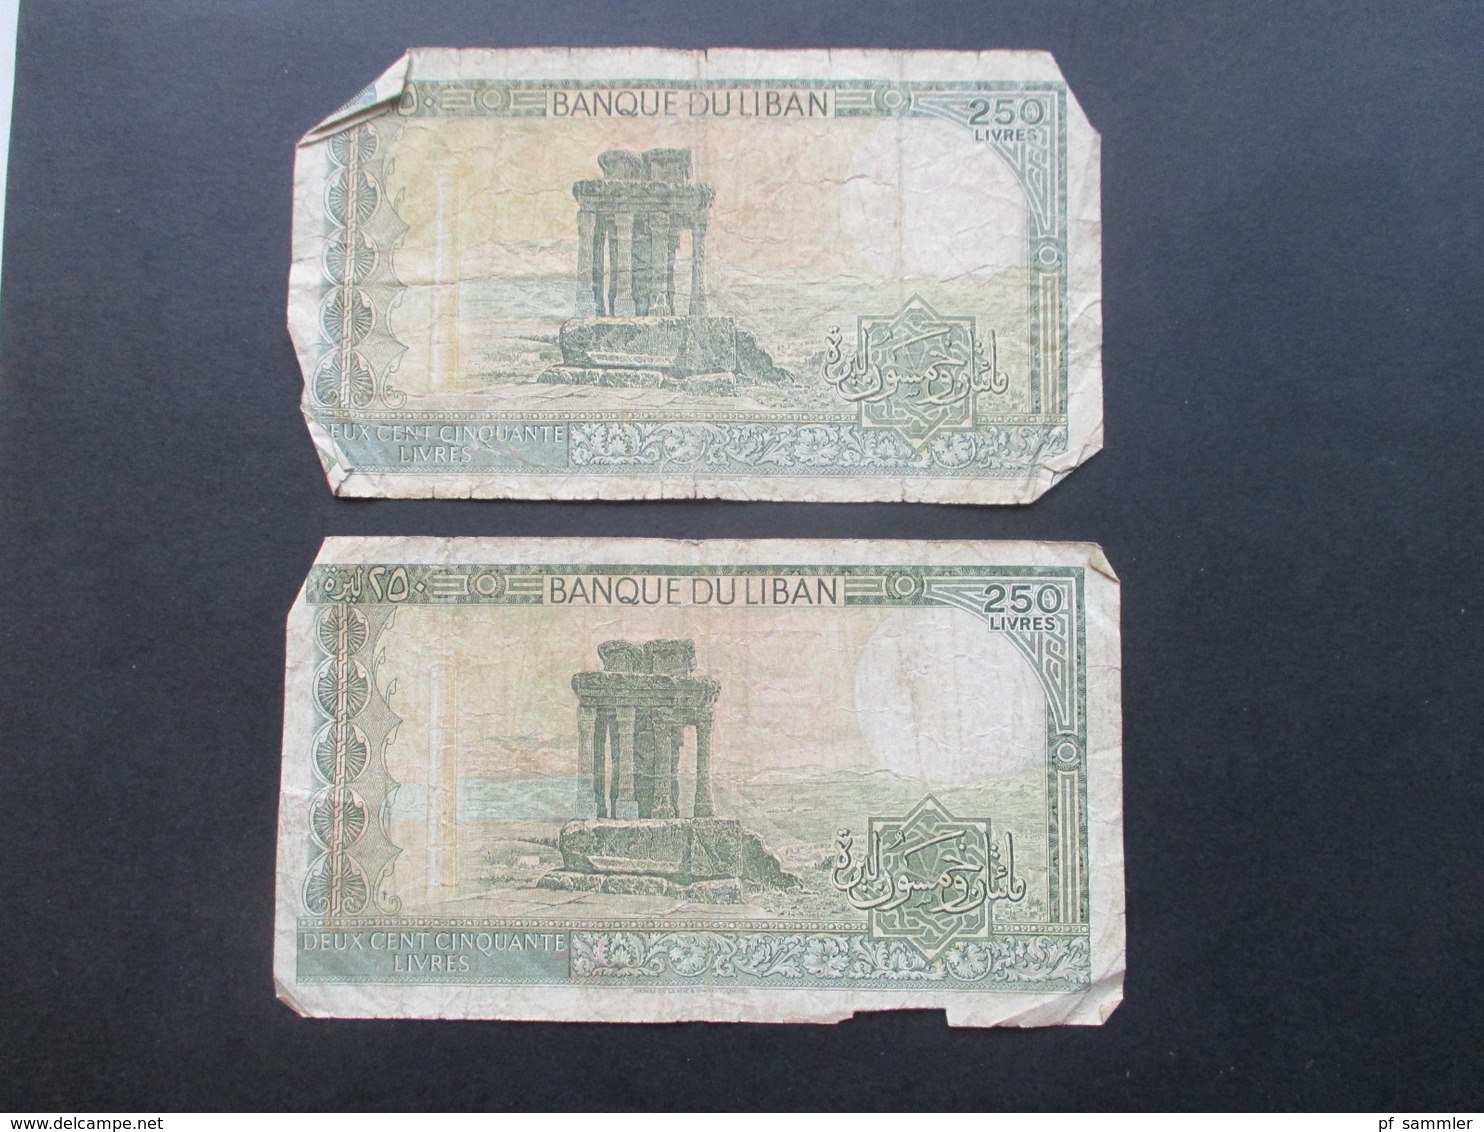 Konvolut Geldscheine / Banknoten naher Osten Syrien / Libanon / Israel / Ägypten 1970er Jahre - 2009 Fundgrube???